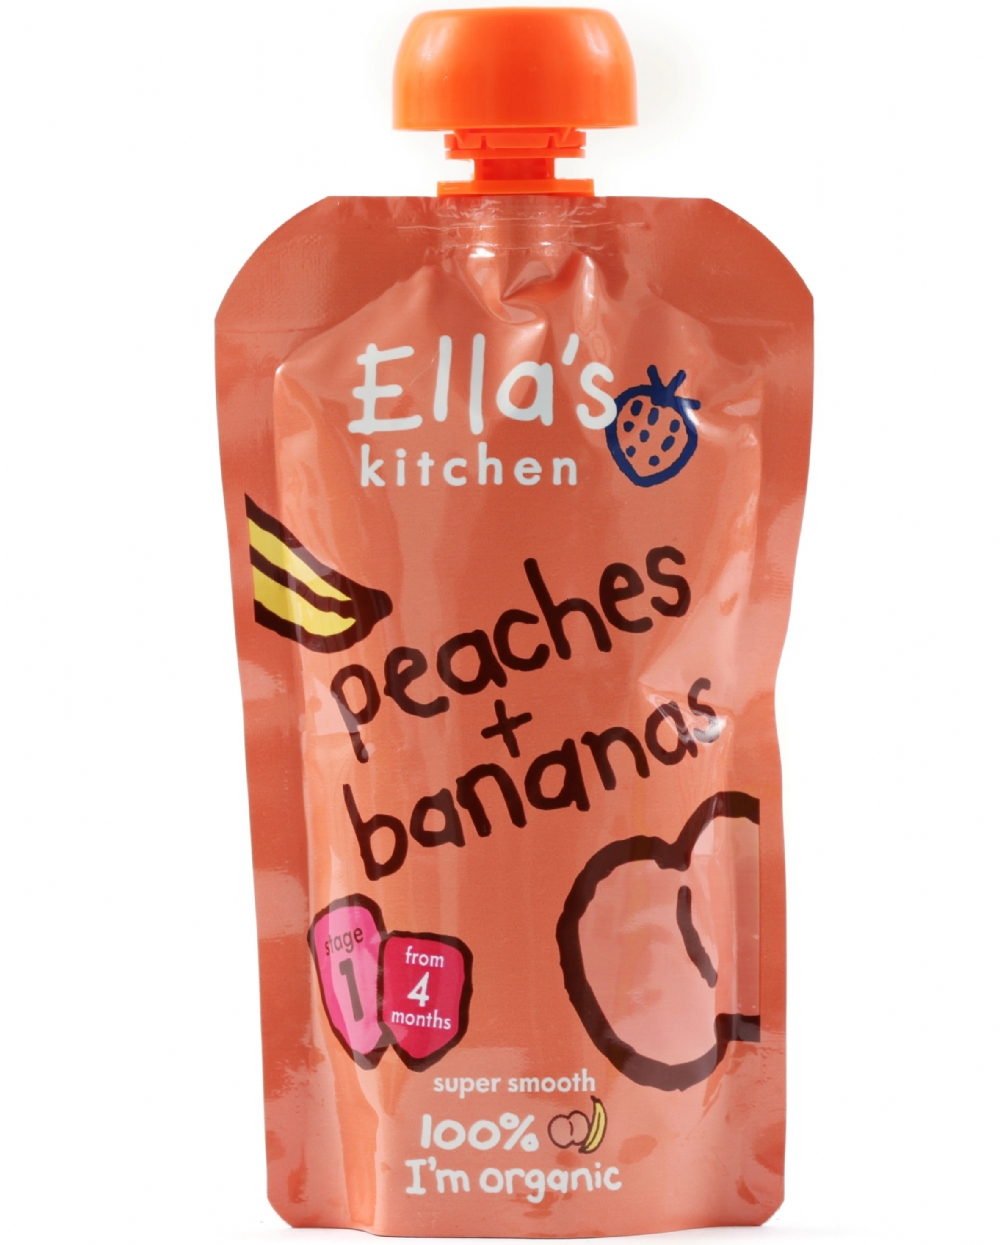 ELLA'S KITCHEN Peaches & Bananas 120g